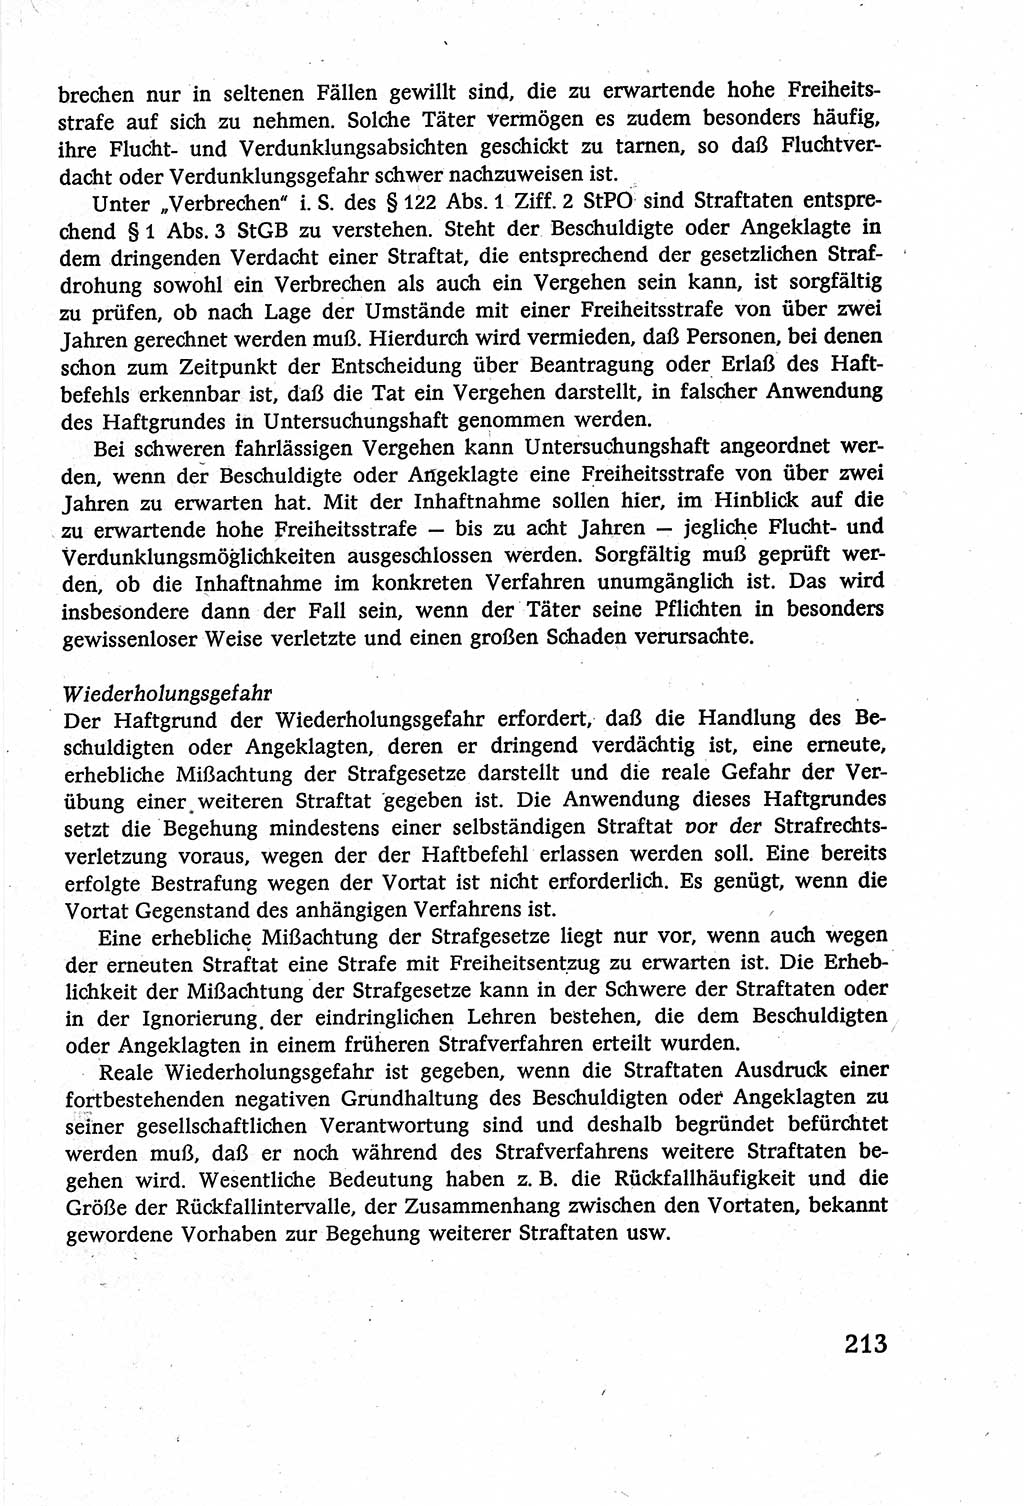 Strafverfahrensrecht [Deutsche Demokratische Republik (DDR)], Lehrbuch 1977, Seite 213 (Strafverf.-R. DDR Lb. 1977, S. 213)